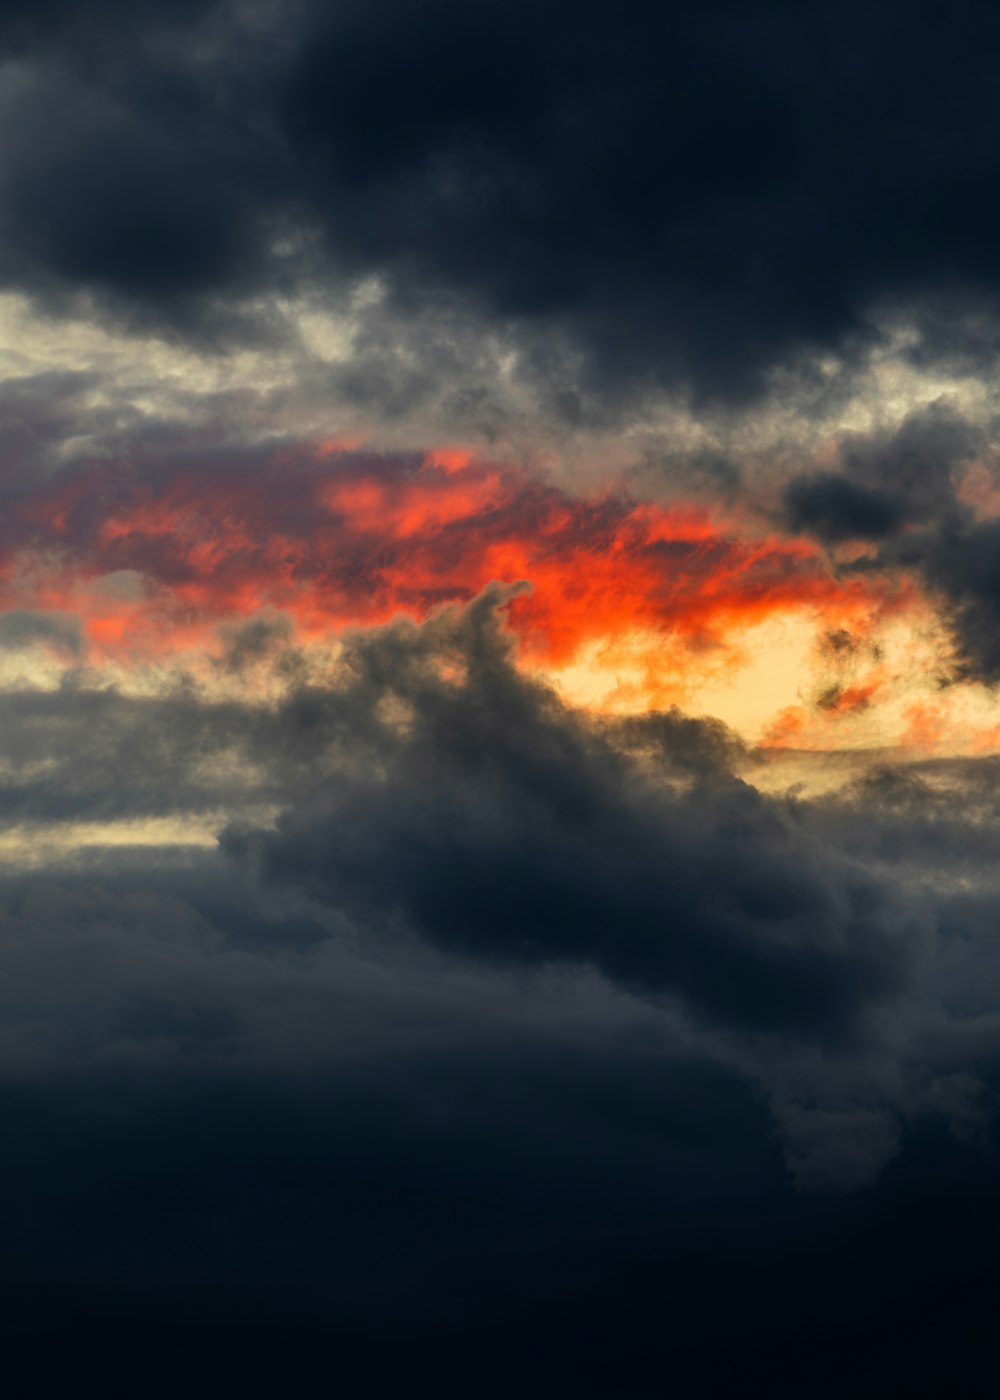 nuages orange et noirs au coucher du soleil